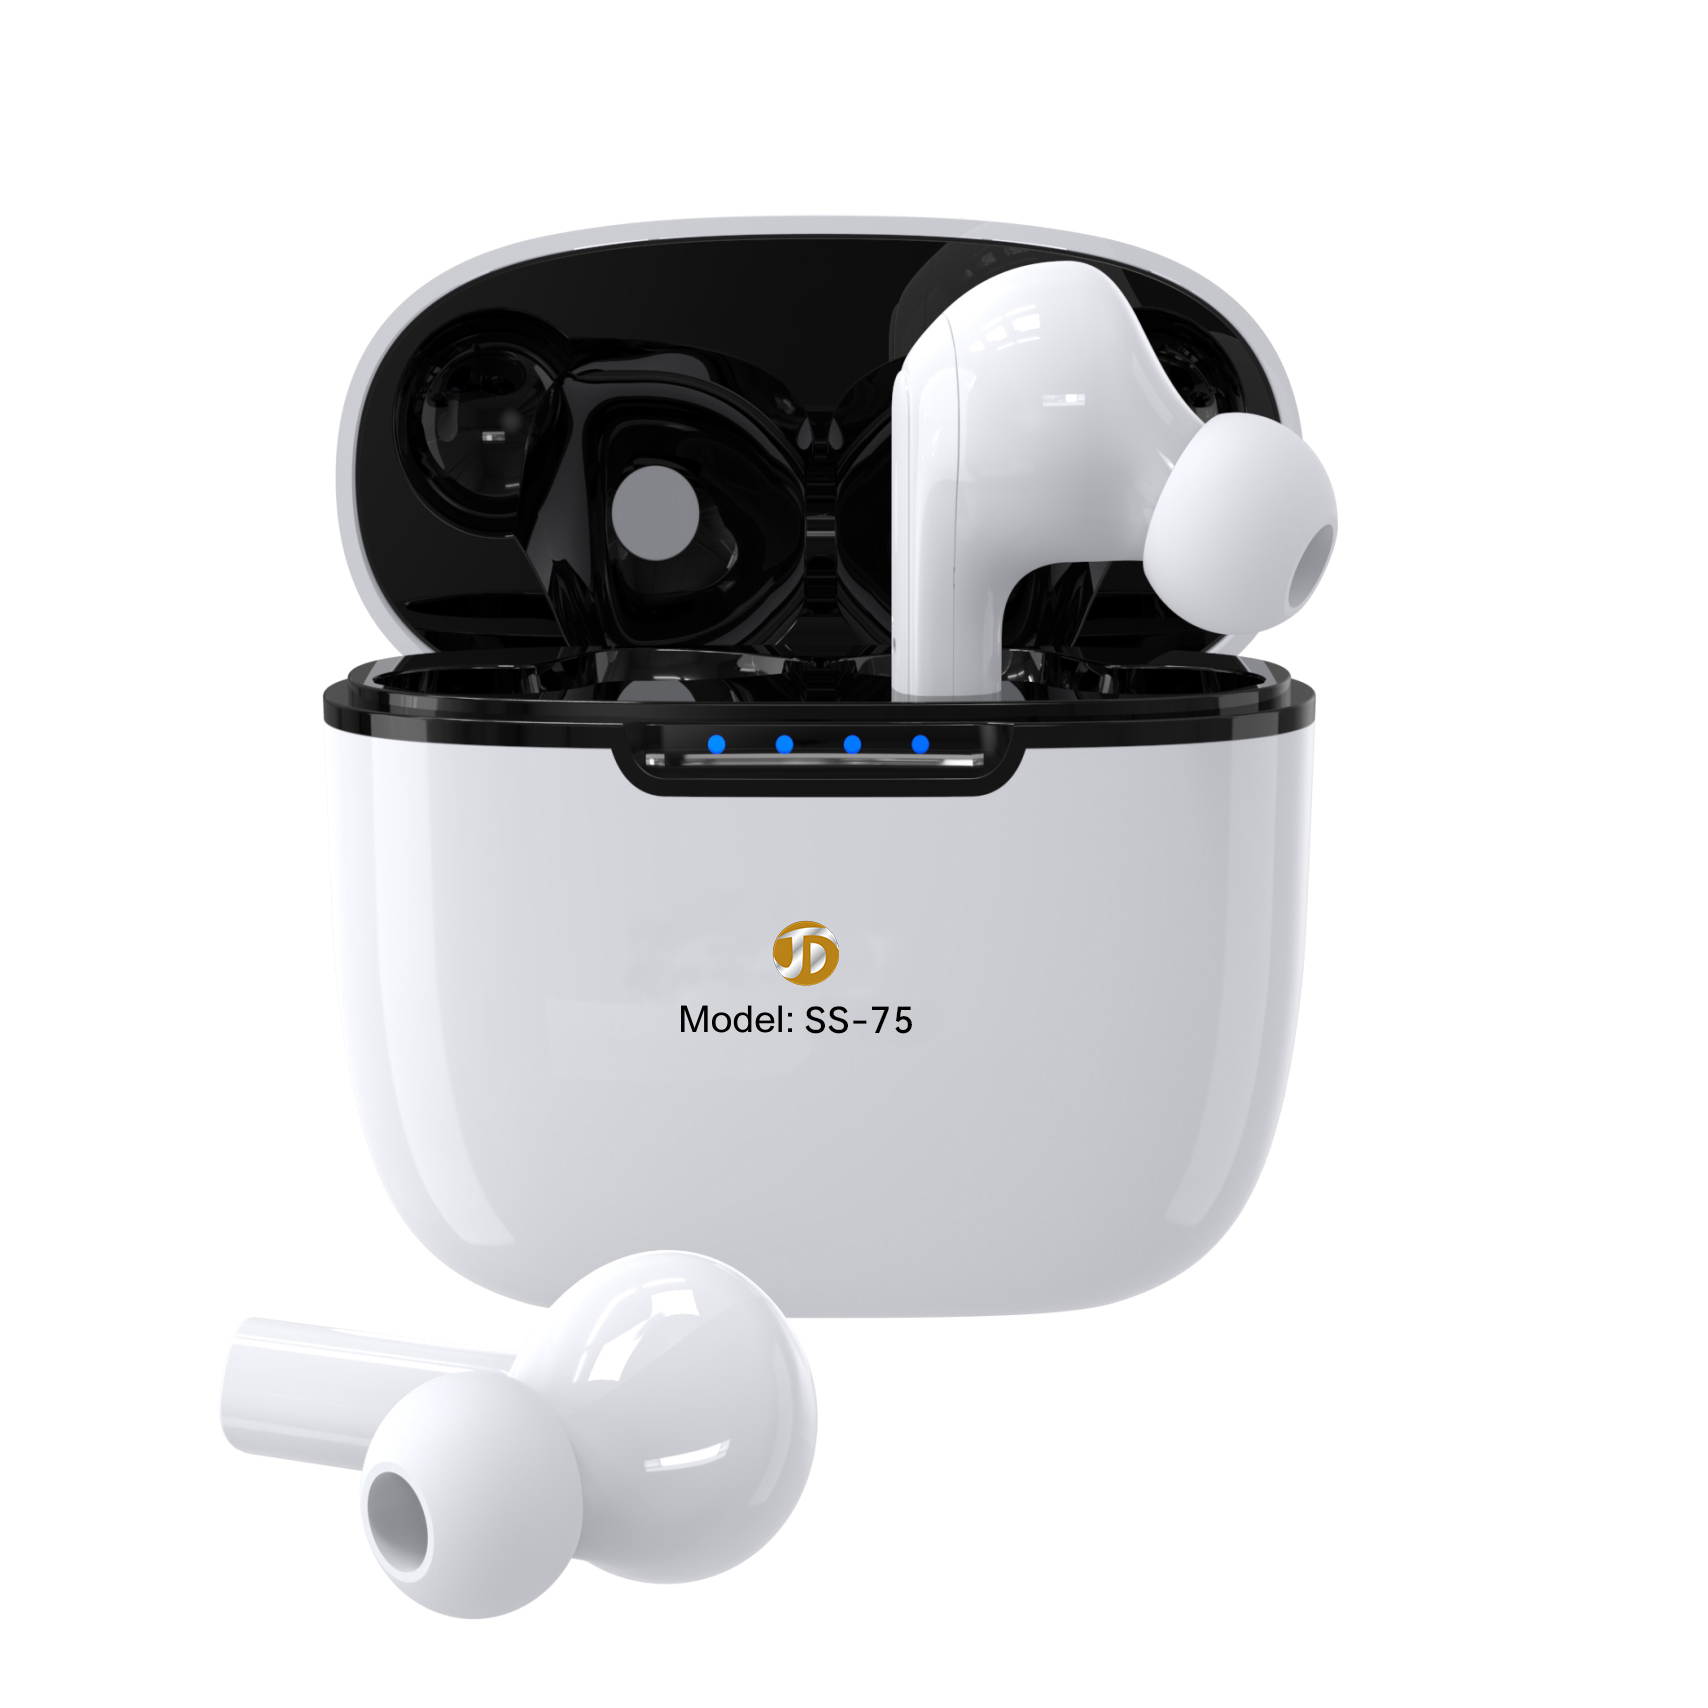 SS-75 New TWS wireless headphones IPX4 waterproof headphones touch earbuds